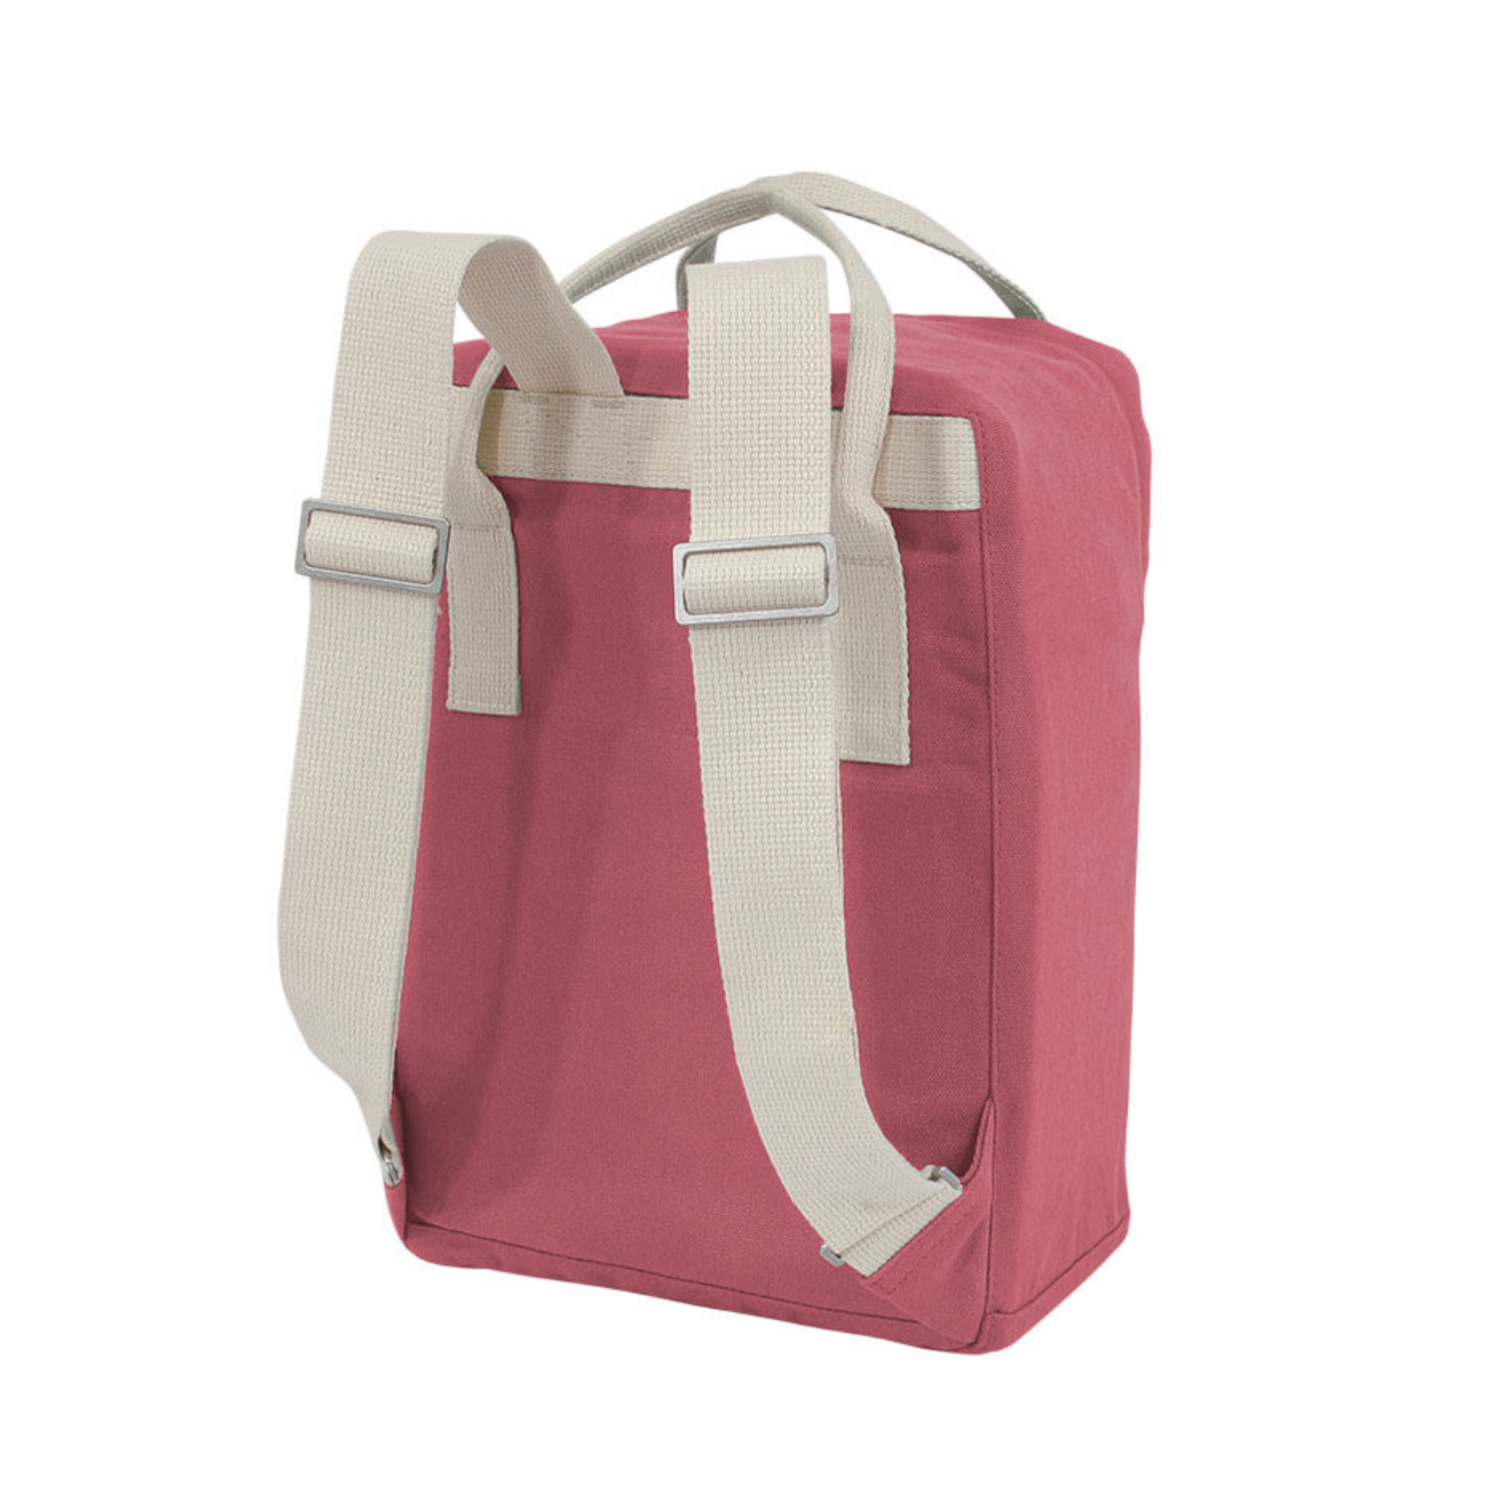 mini backpack, small backpack for women Melawear mini ansvar vintage red rucksack